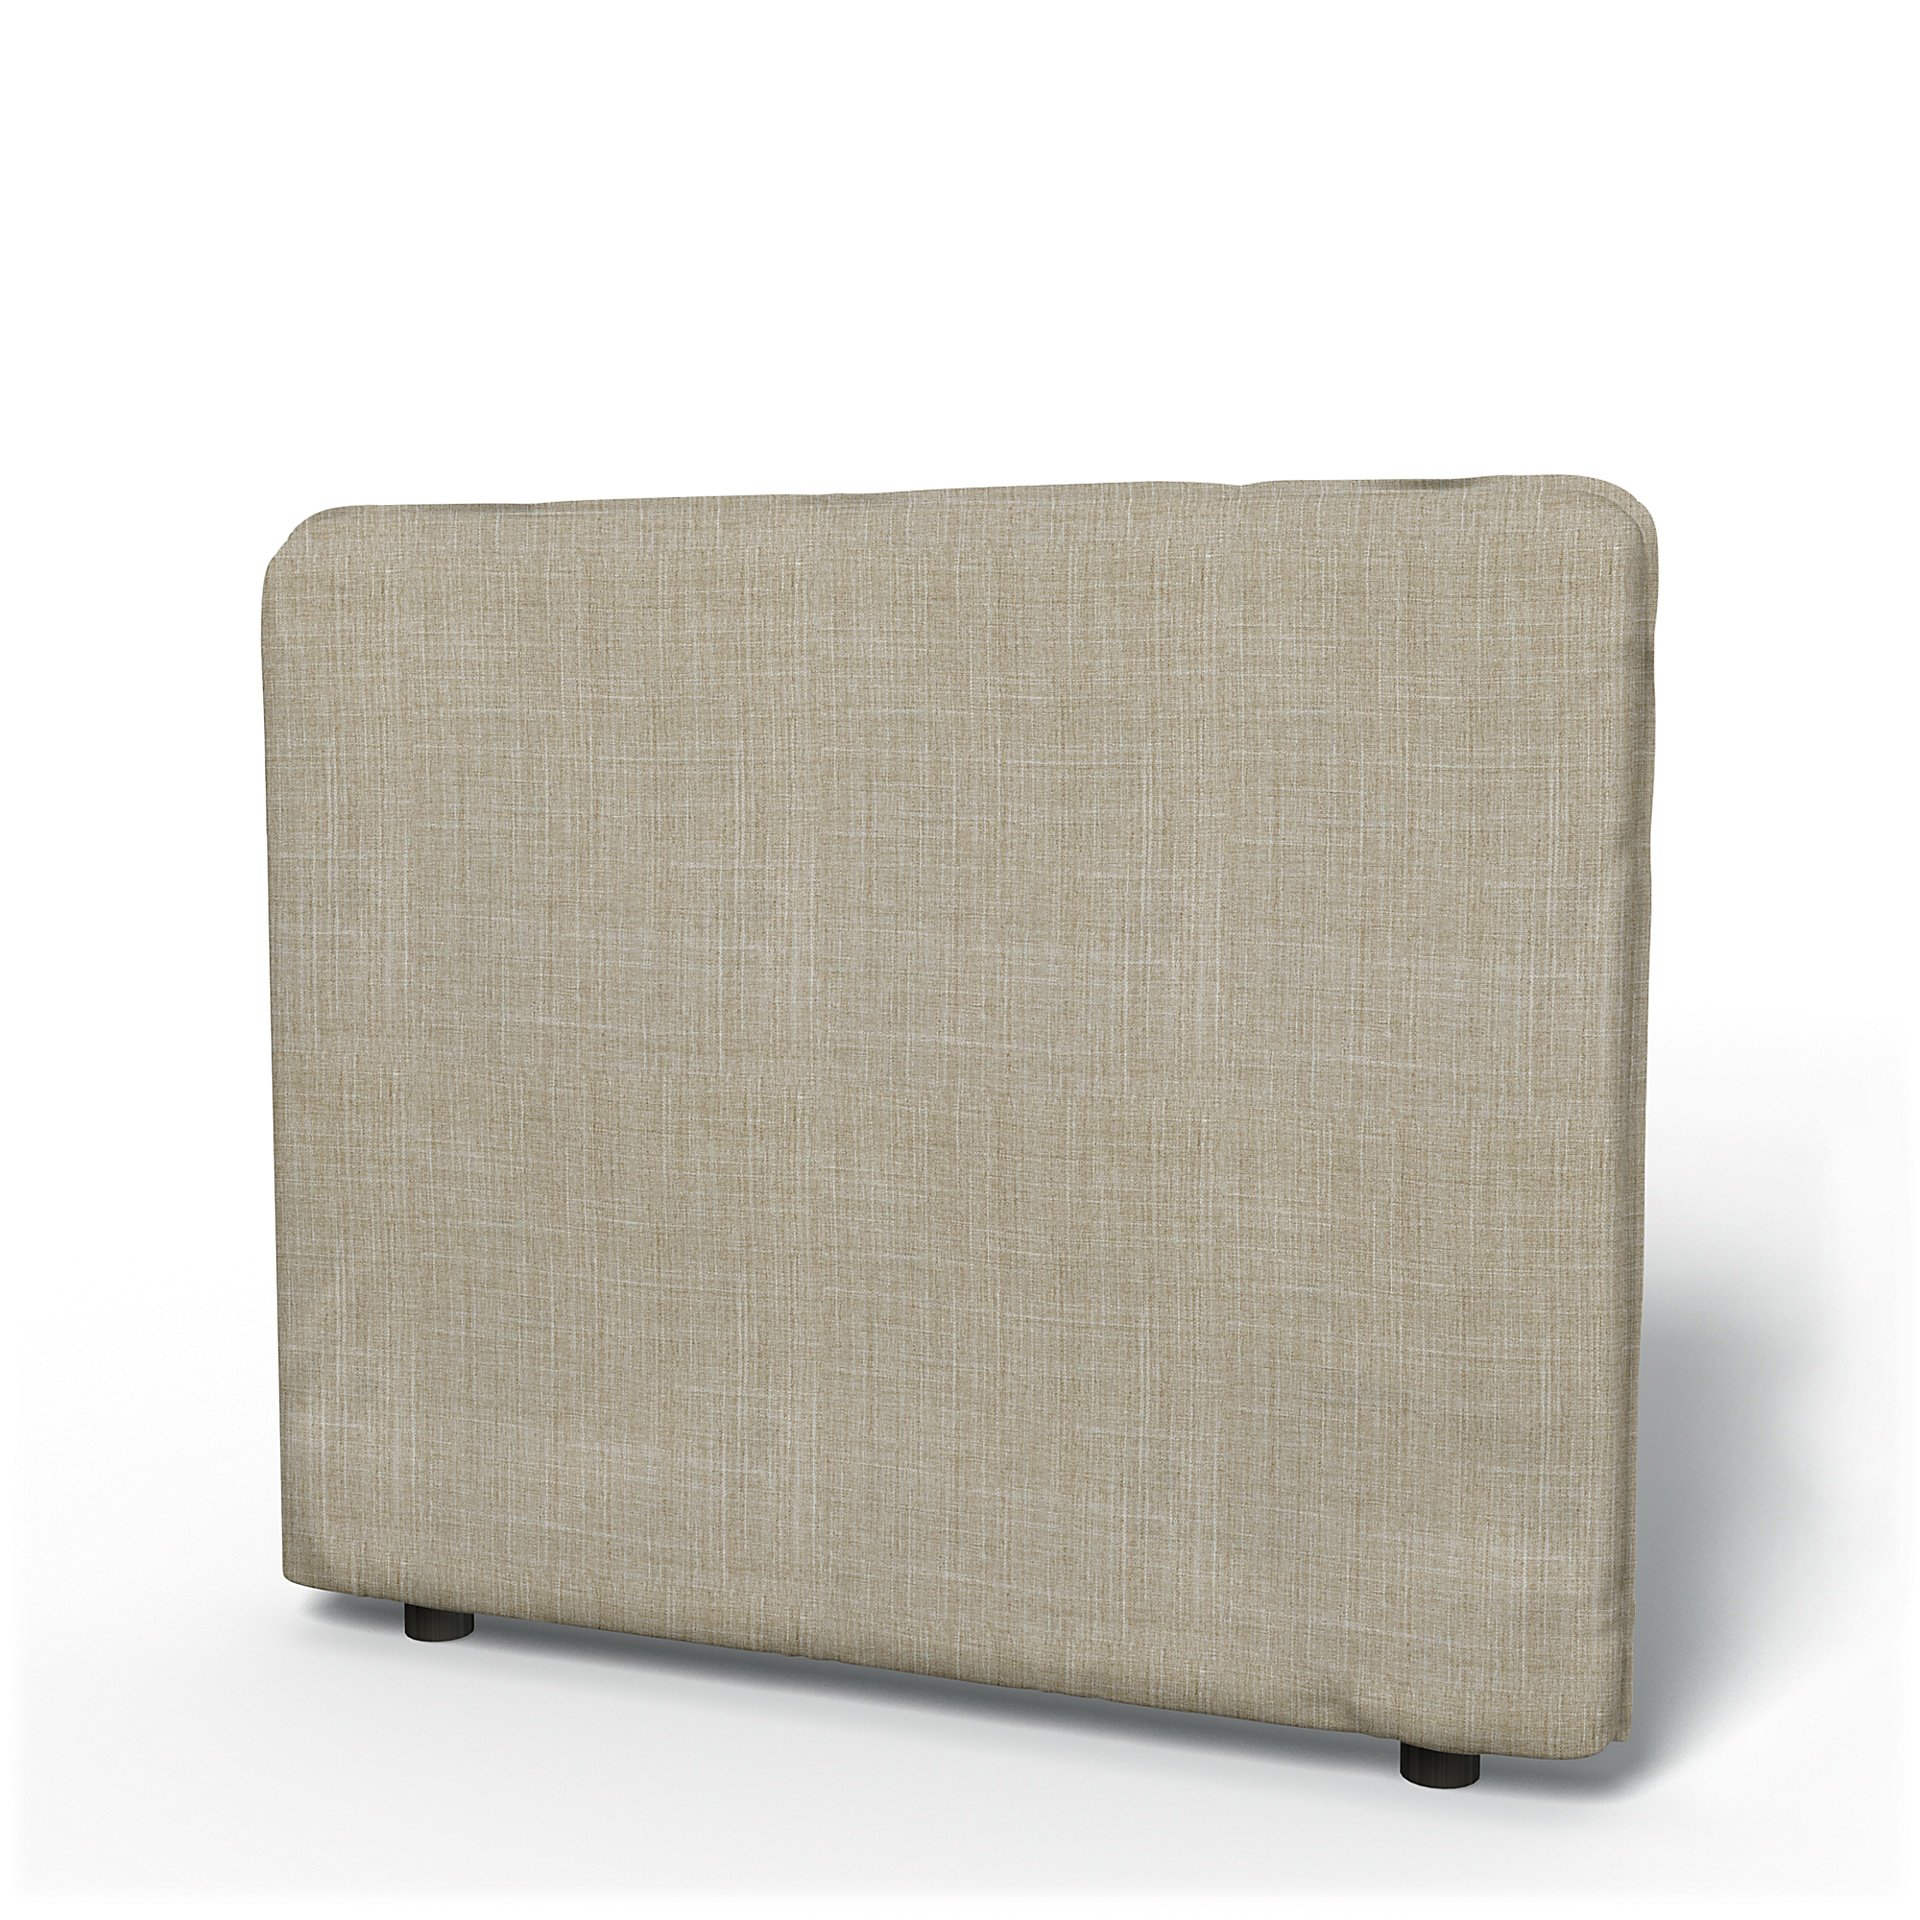 IKEA - Vallentuna Low Backrest Cover 100x80cm 39x32in, Sand Beige, Boucle & Texture - Bemz